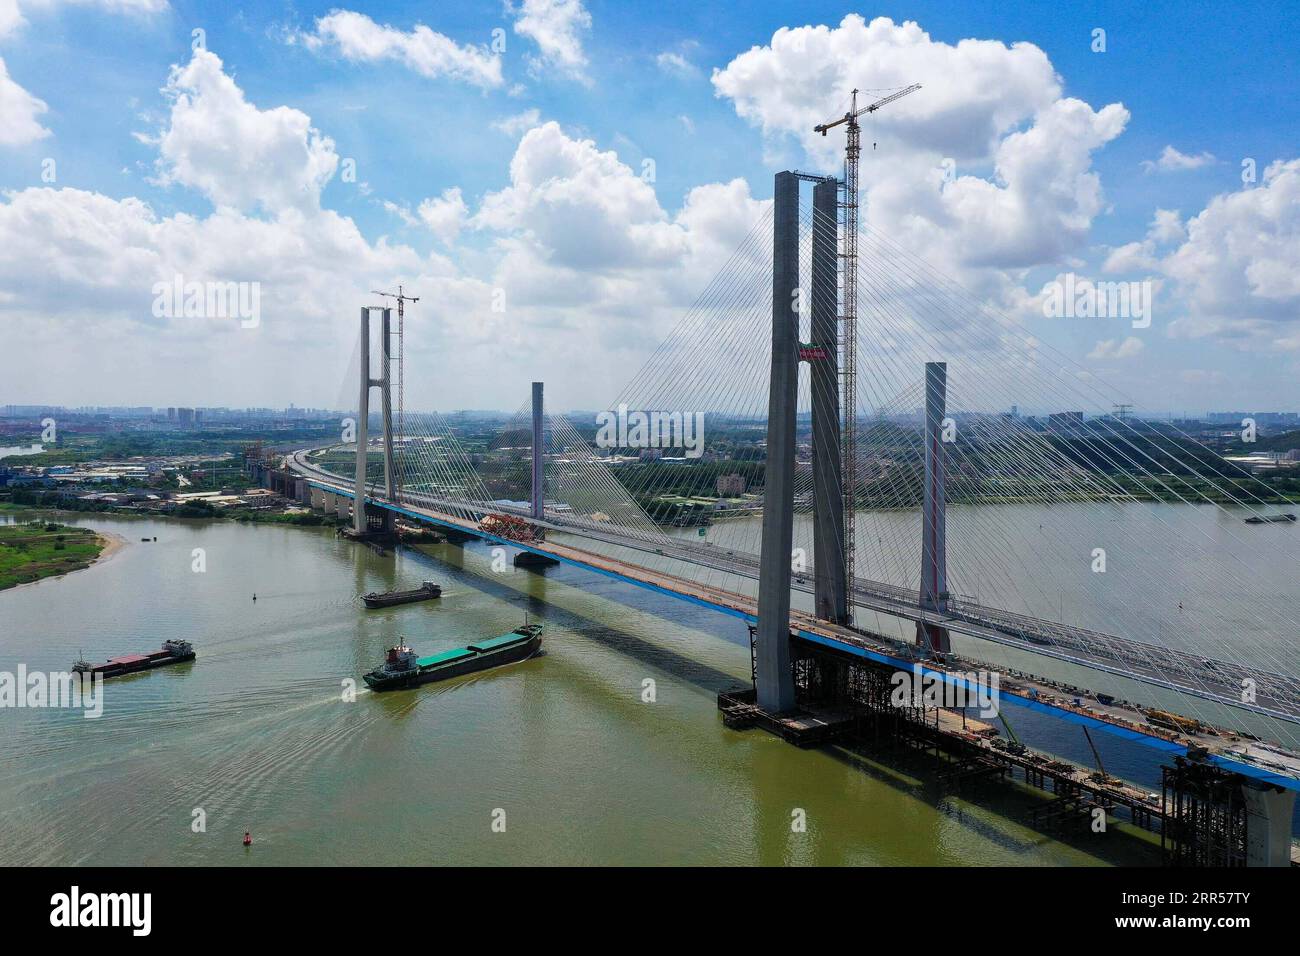 201225 -- PECHINO, 25 dicembre 2020 -- foto aerea scattata il 9 agosto 2020 mostra il sito di installazione dell'ultima trave scatolata in acciaio di un grande ponte ferroviario strallato sul fiume Xijiang nella provincia del Guangdong della Cina meridionale. YearenderCHINA-ANNO DEL 2020-MODERATAMENTE PROSPERO SOCIETYCN LiuxDawei PUBLICATIONxNOTxINxCHN Foto Stock